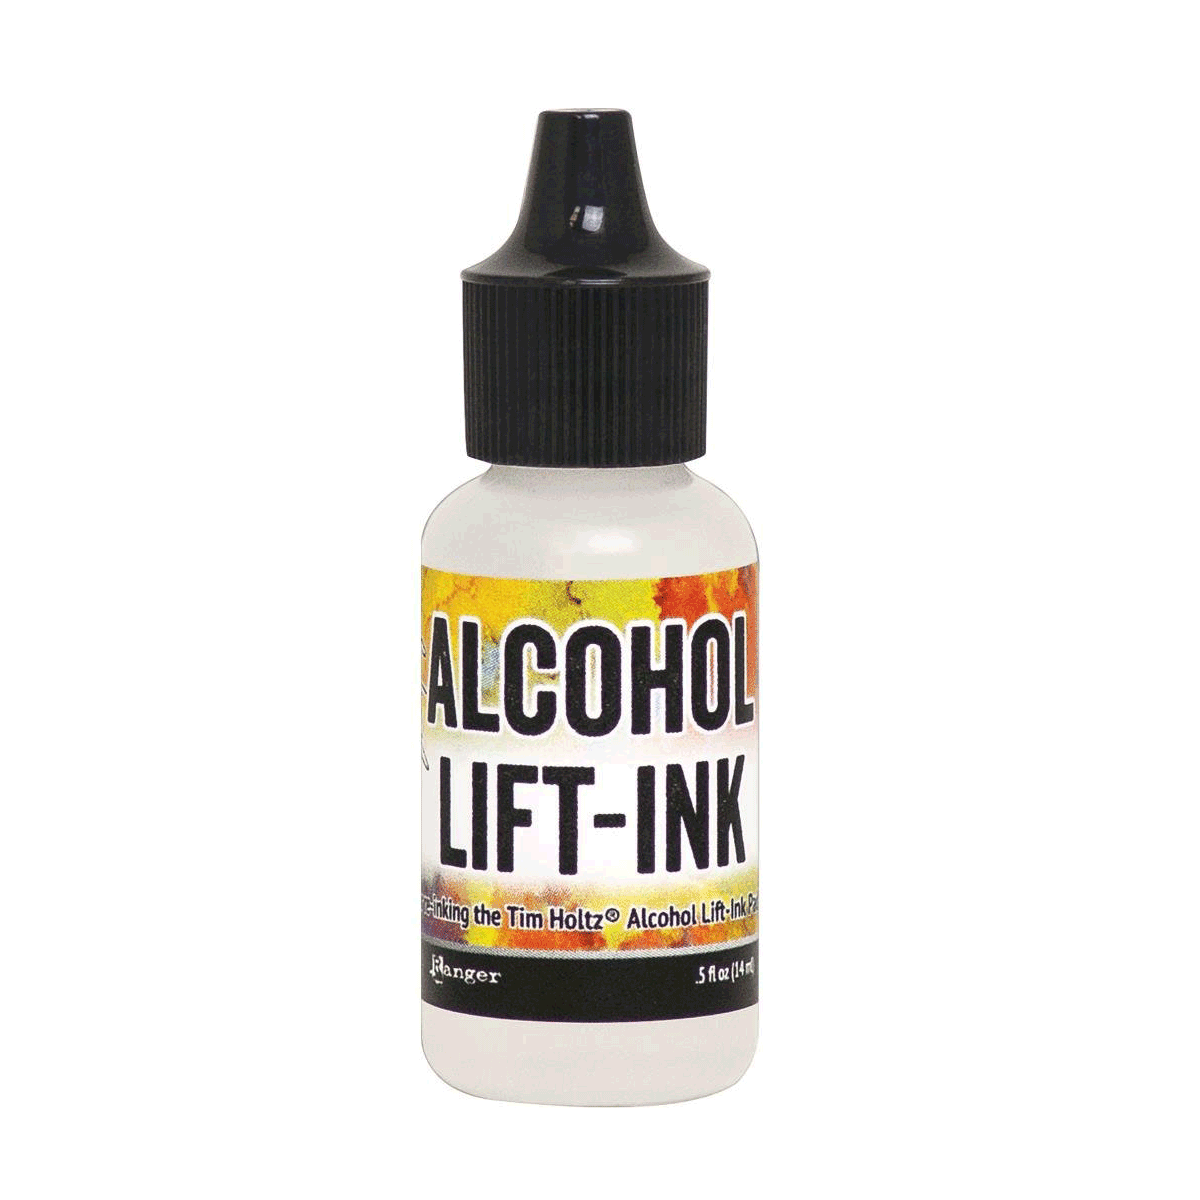 Tim Holtz Alcohol Lift-Ink Re-inker .5oz